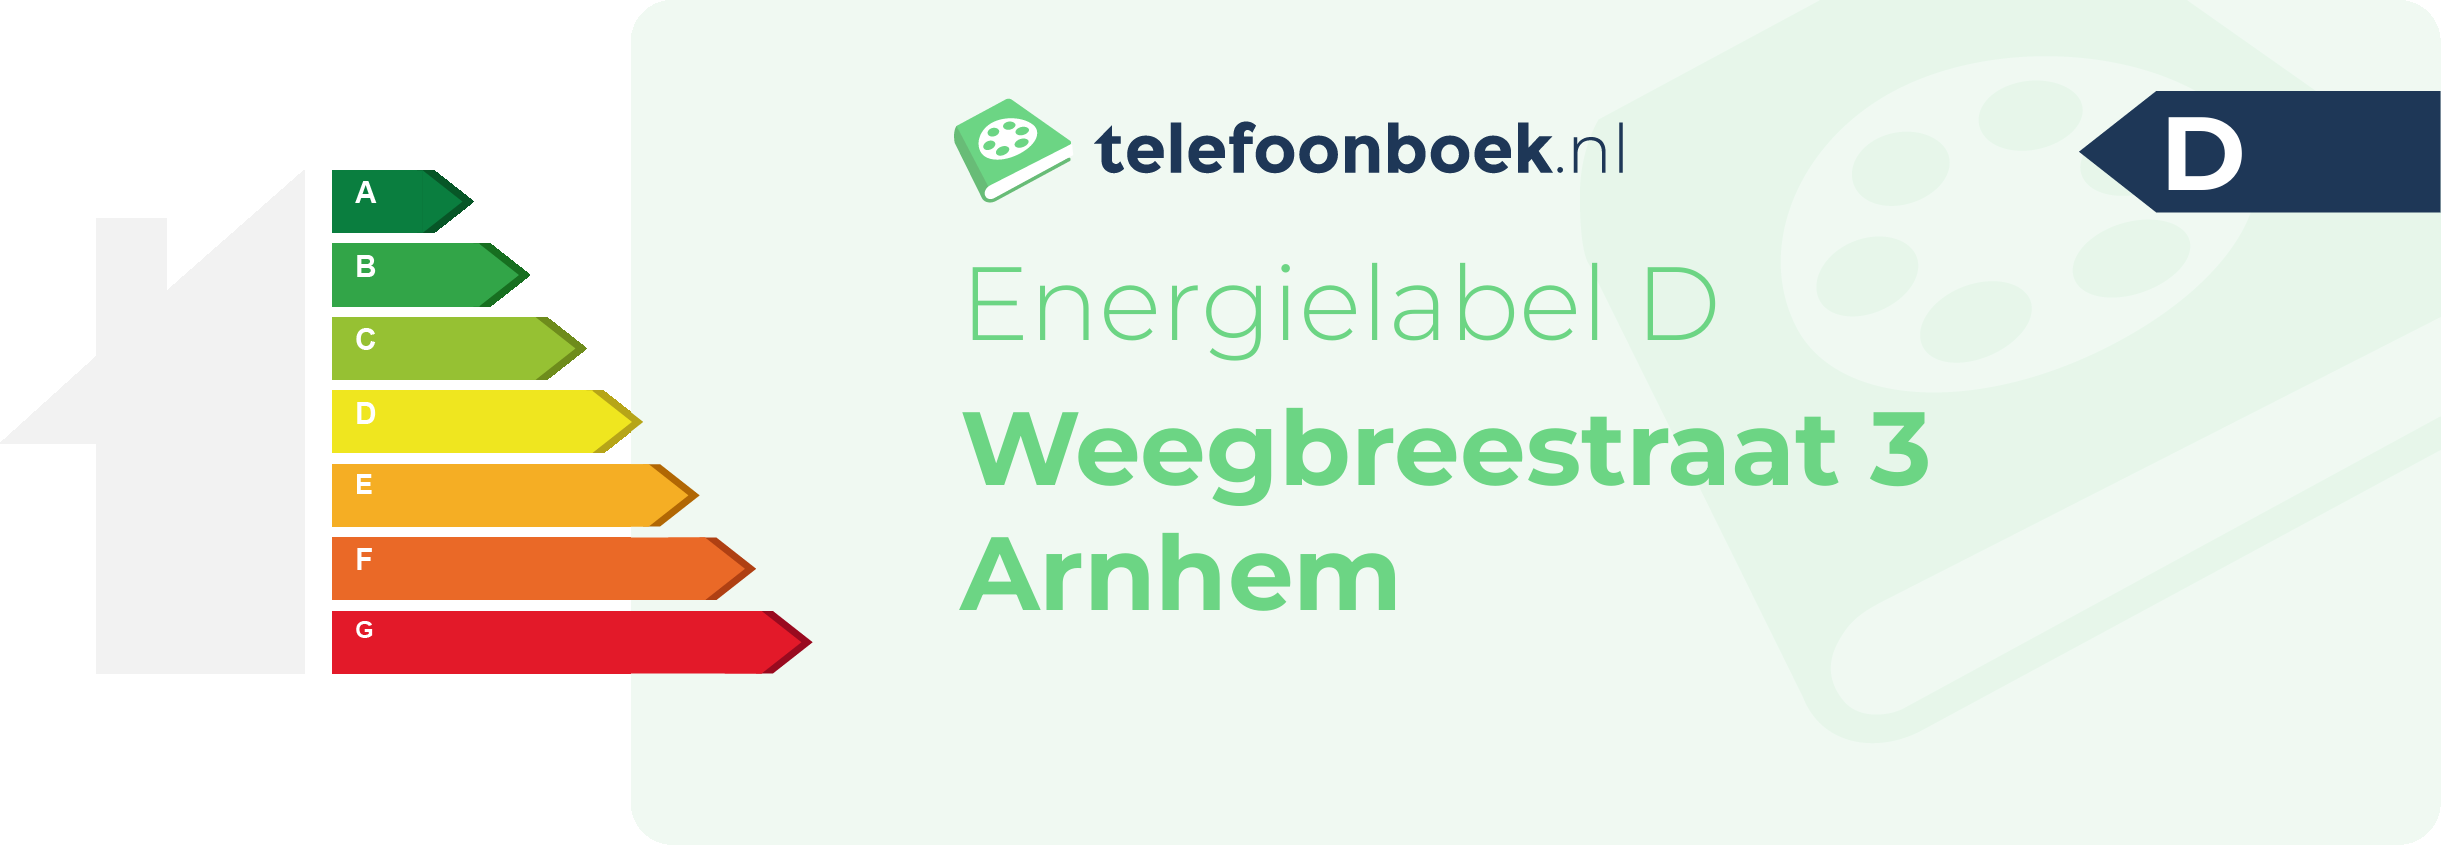 Energielabel Weegbreestraat 3 Arnhem